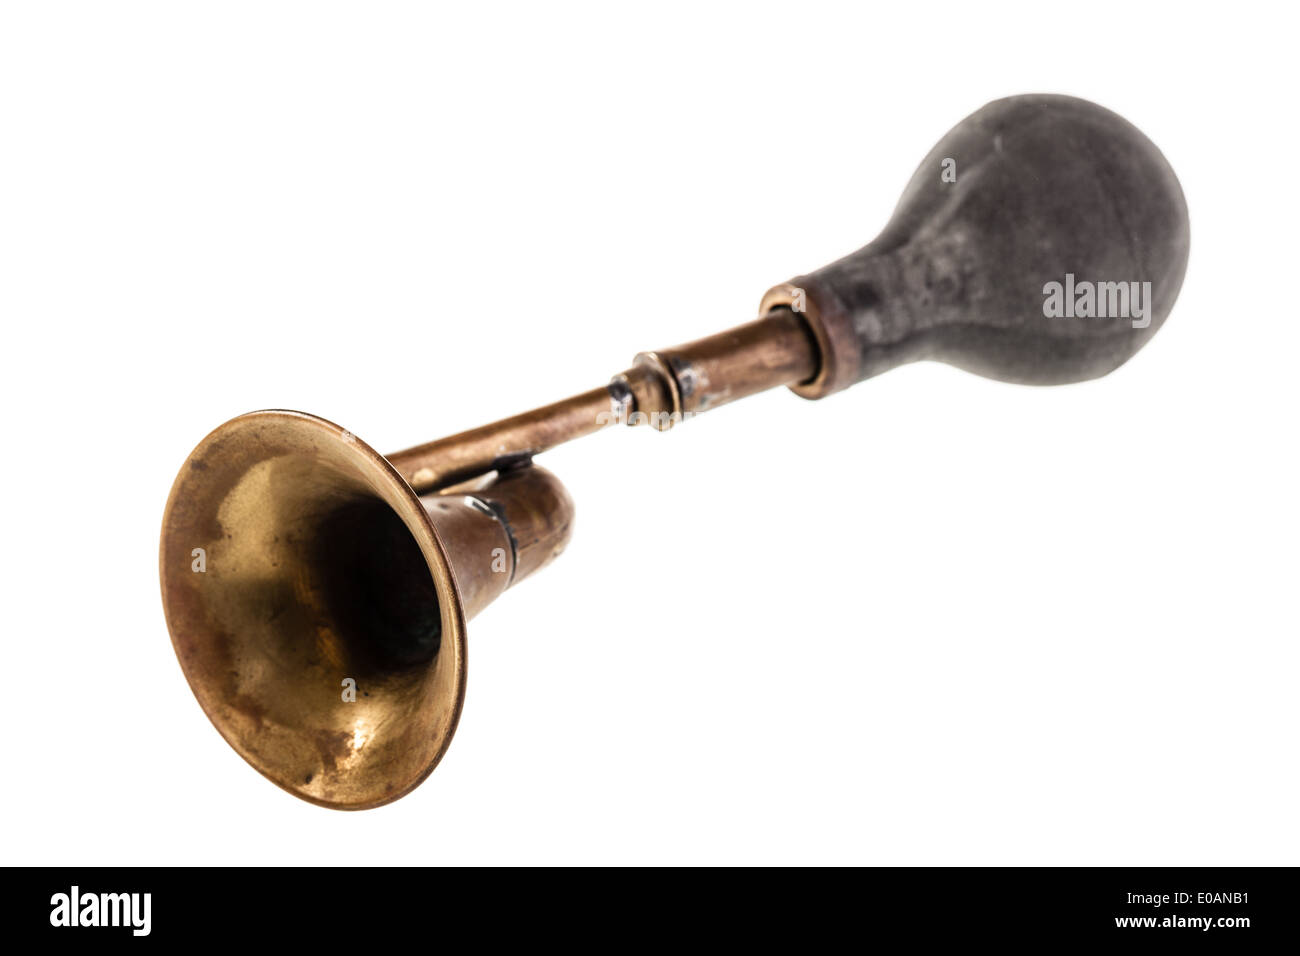 eine alte manuelle Lufthorn isoliert auf einem weißen Hintergrund  Stockfotografie - Alamy